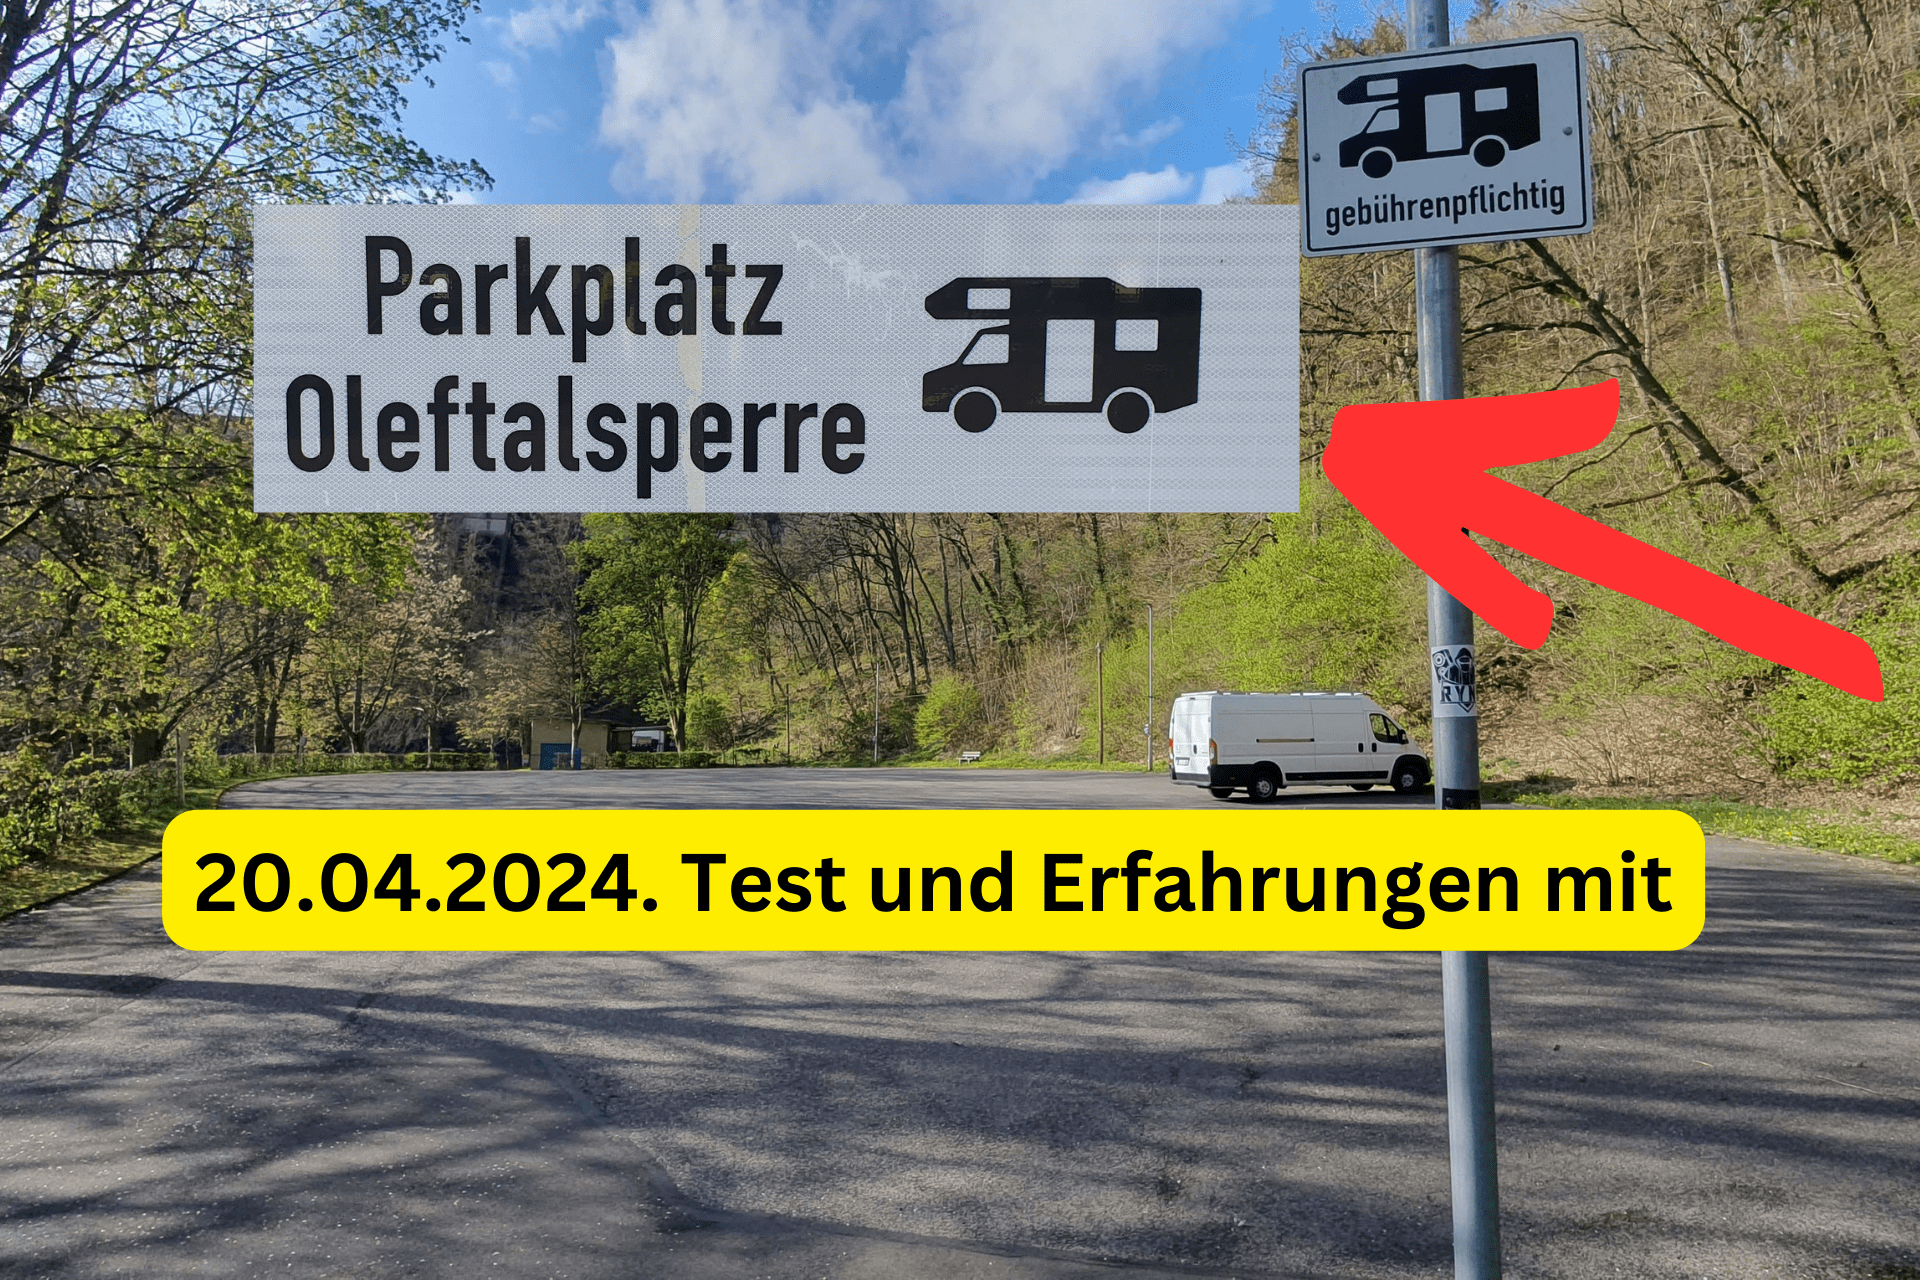 Campingplatz Oleftalsperre Test, Erfahrungen in 2024